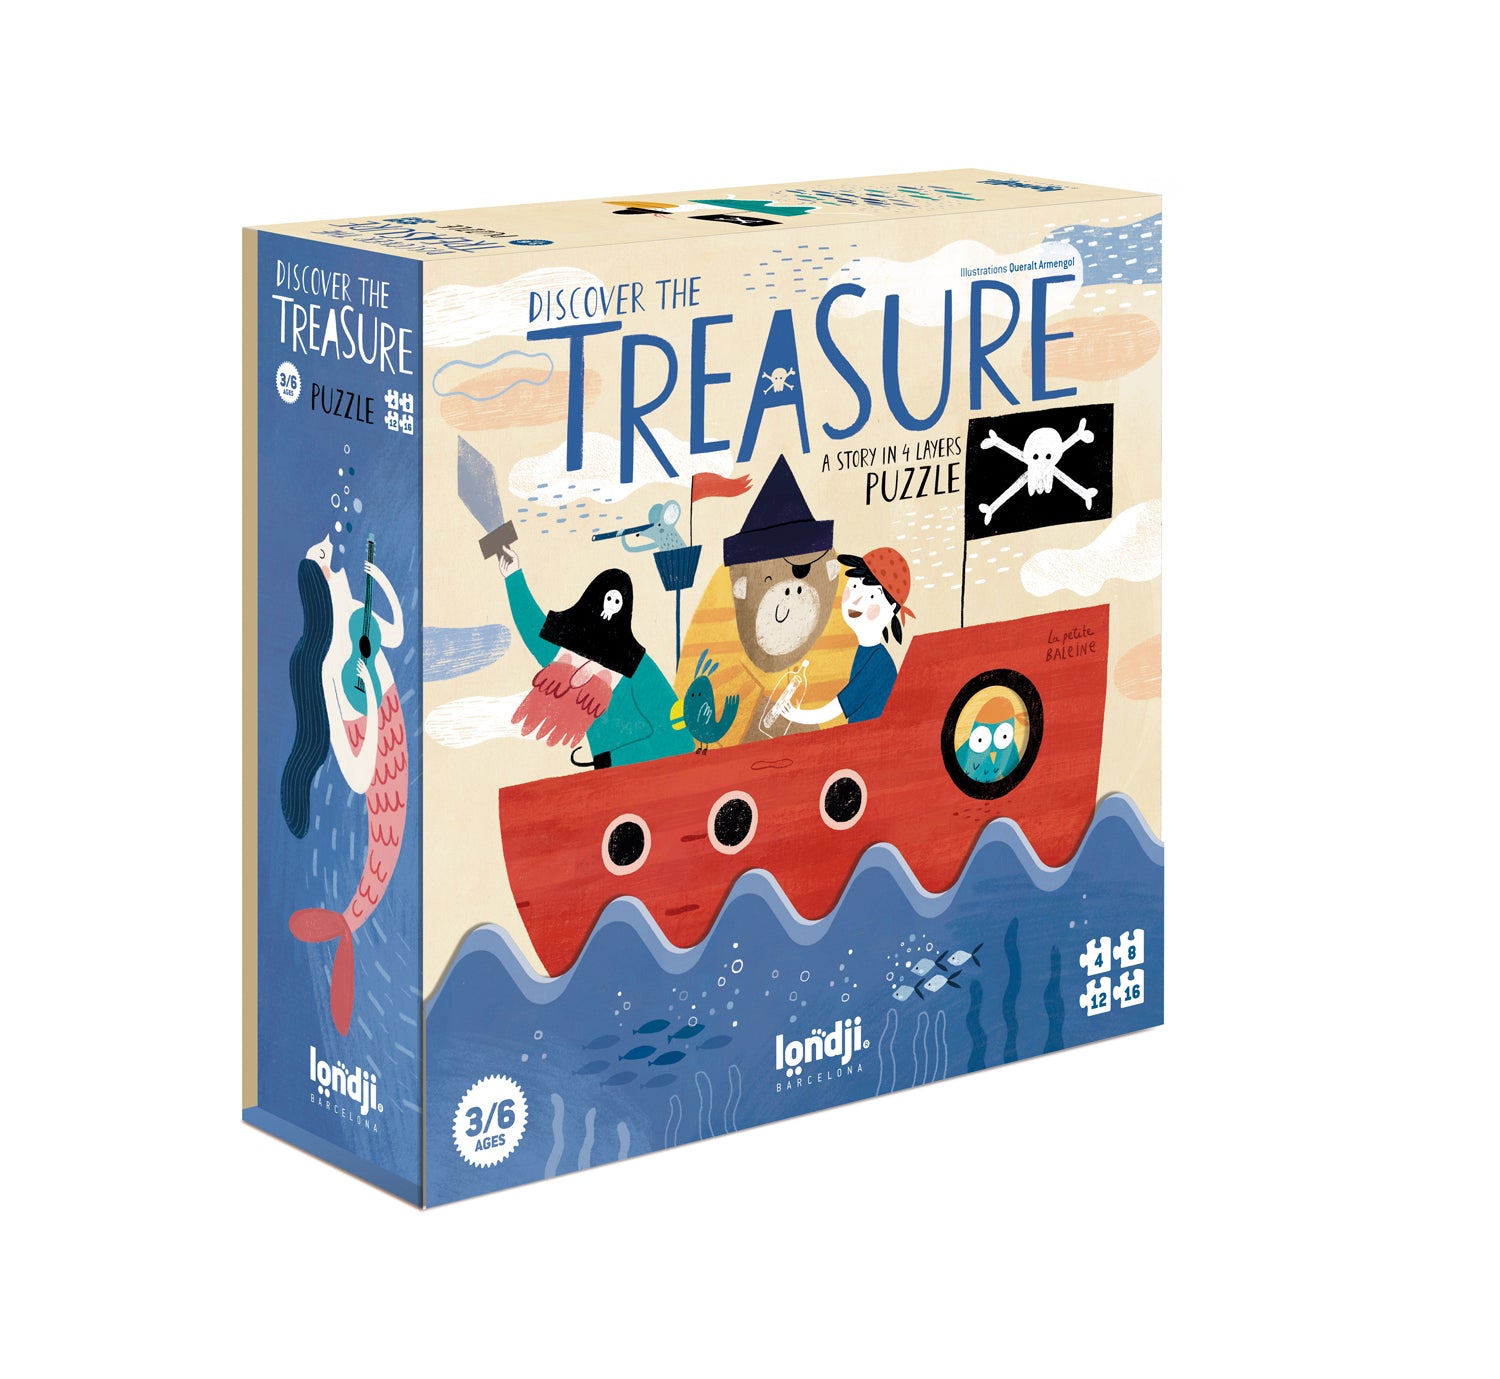 Puzzle original et évolutif de 4 à 16 pièces sur le thème des pirates et du trésor caché dans la mer